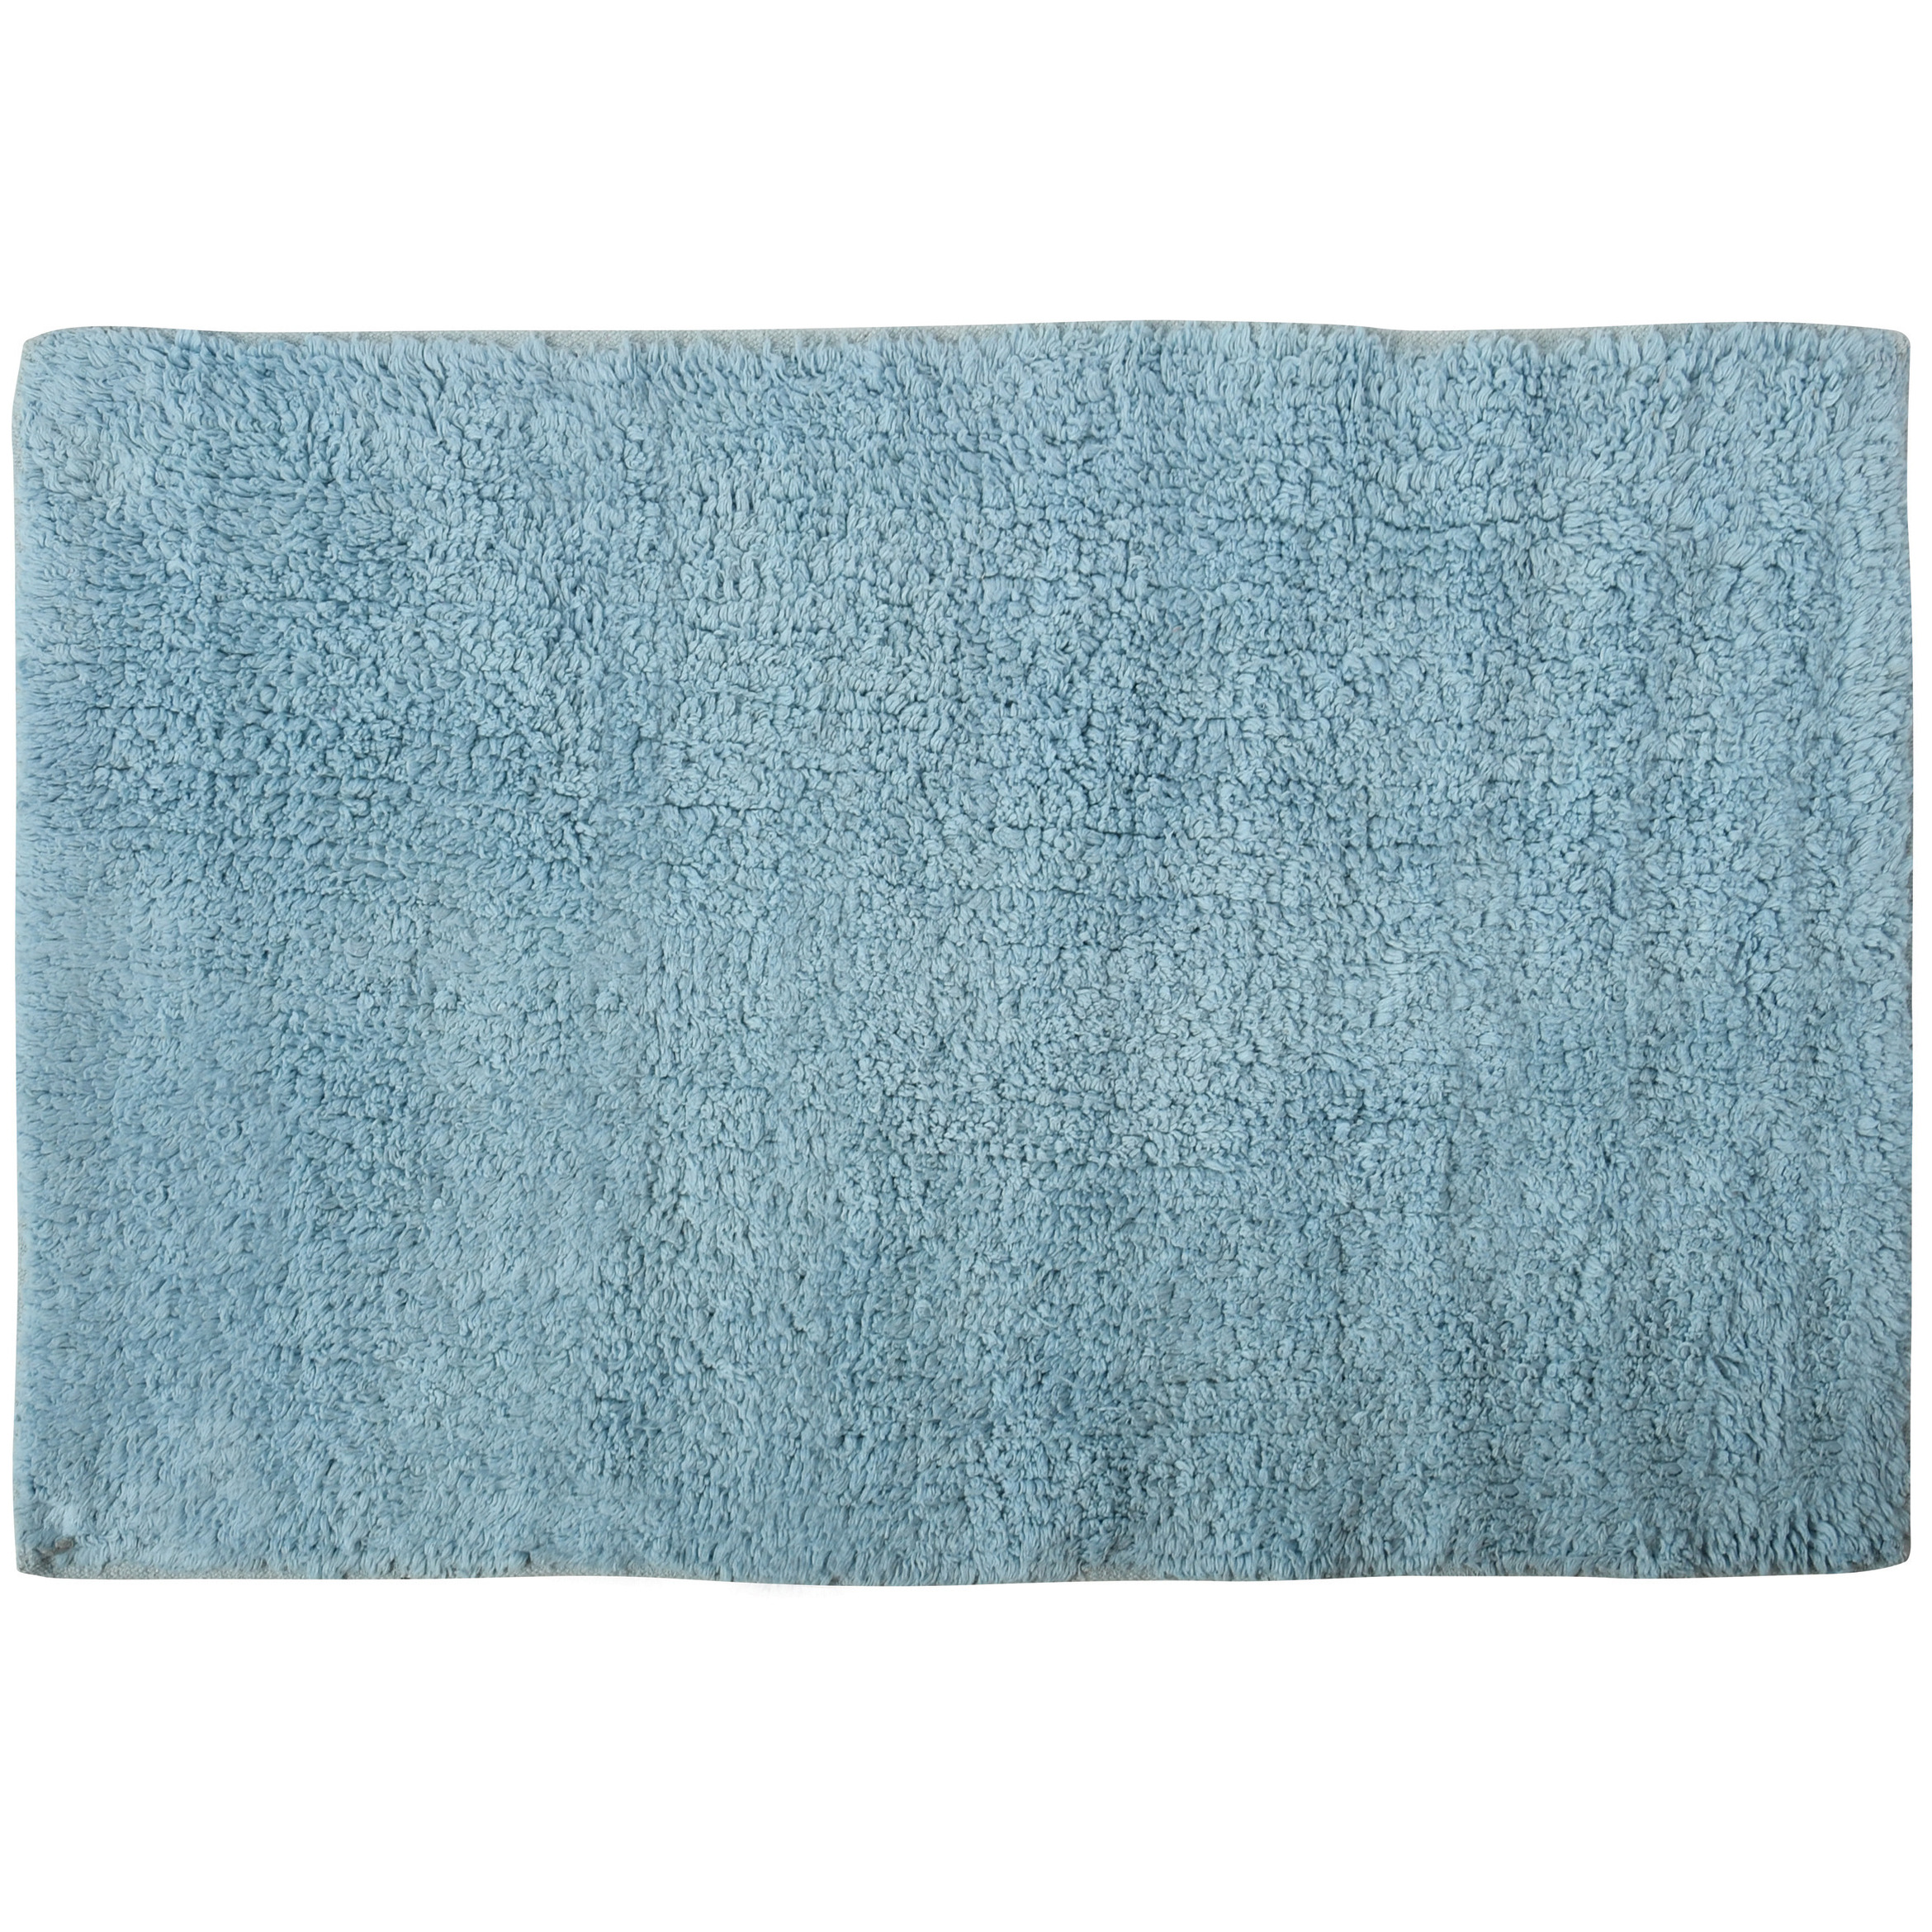 Badkamerkleedje-badmat voor op de vloer lichtblauw 45 x 70 cm